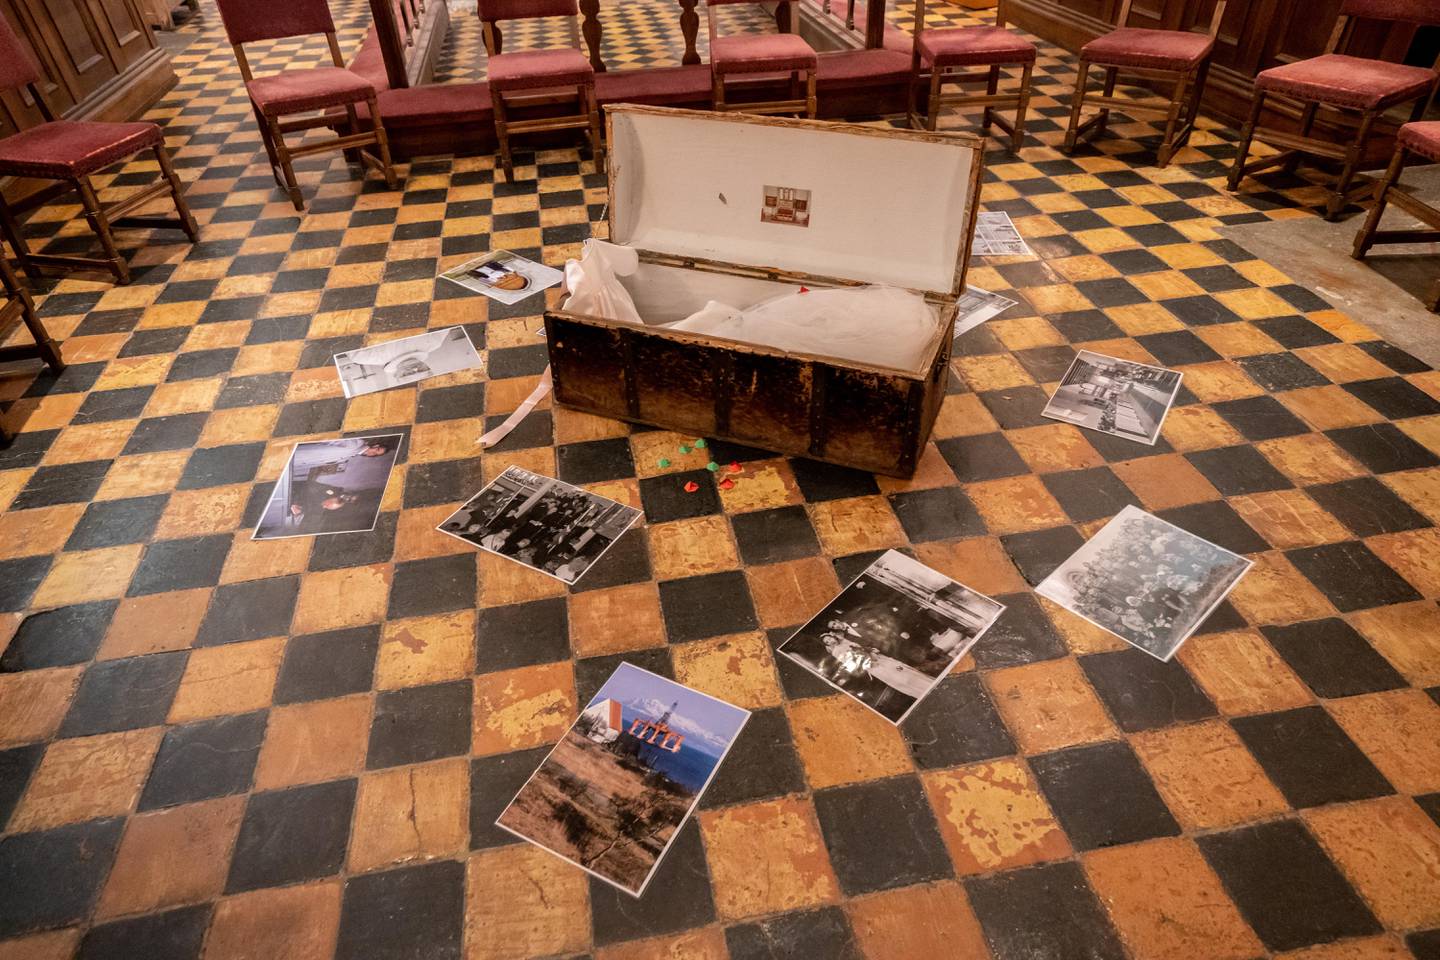 En selskinnskiste med gjenstander knyttet til kirkelige handlinger og tekstbiter til «Radioteateret» var plassert midt i rommet i Trondenes kirke.